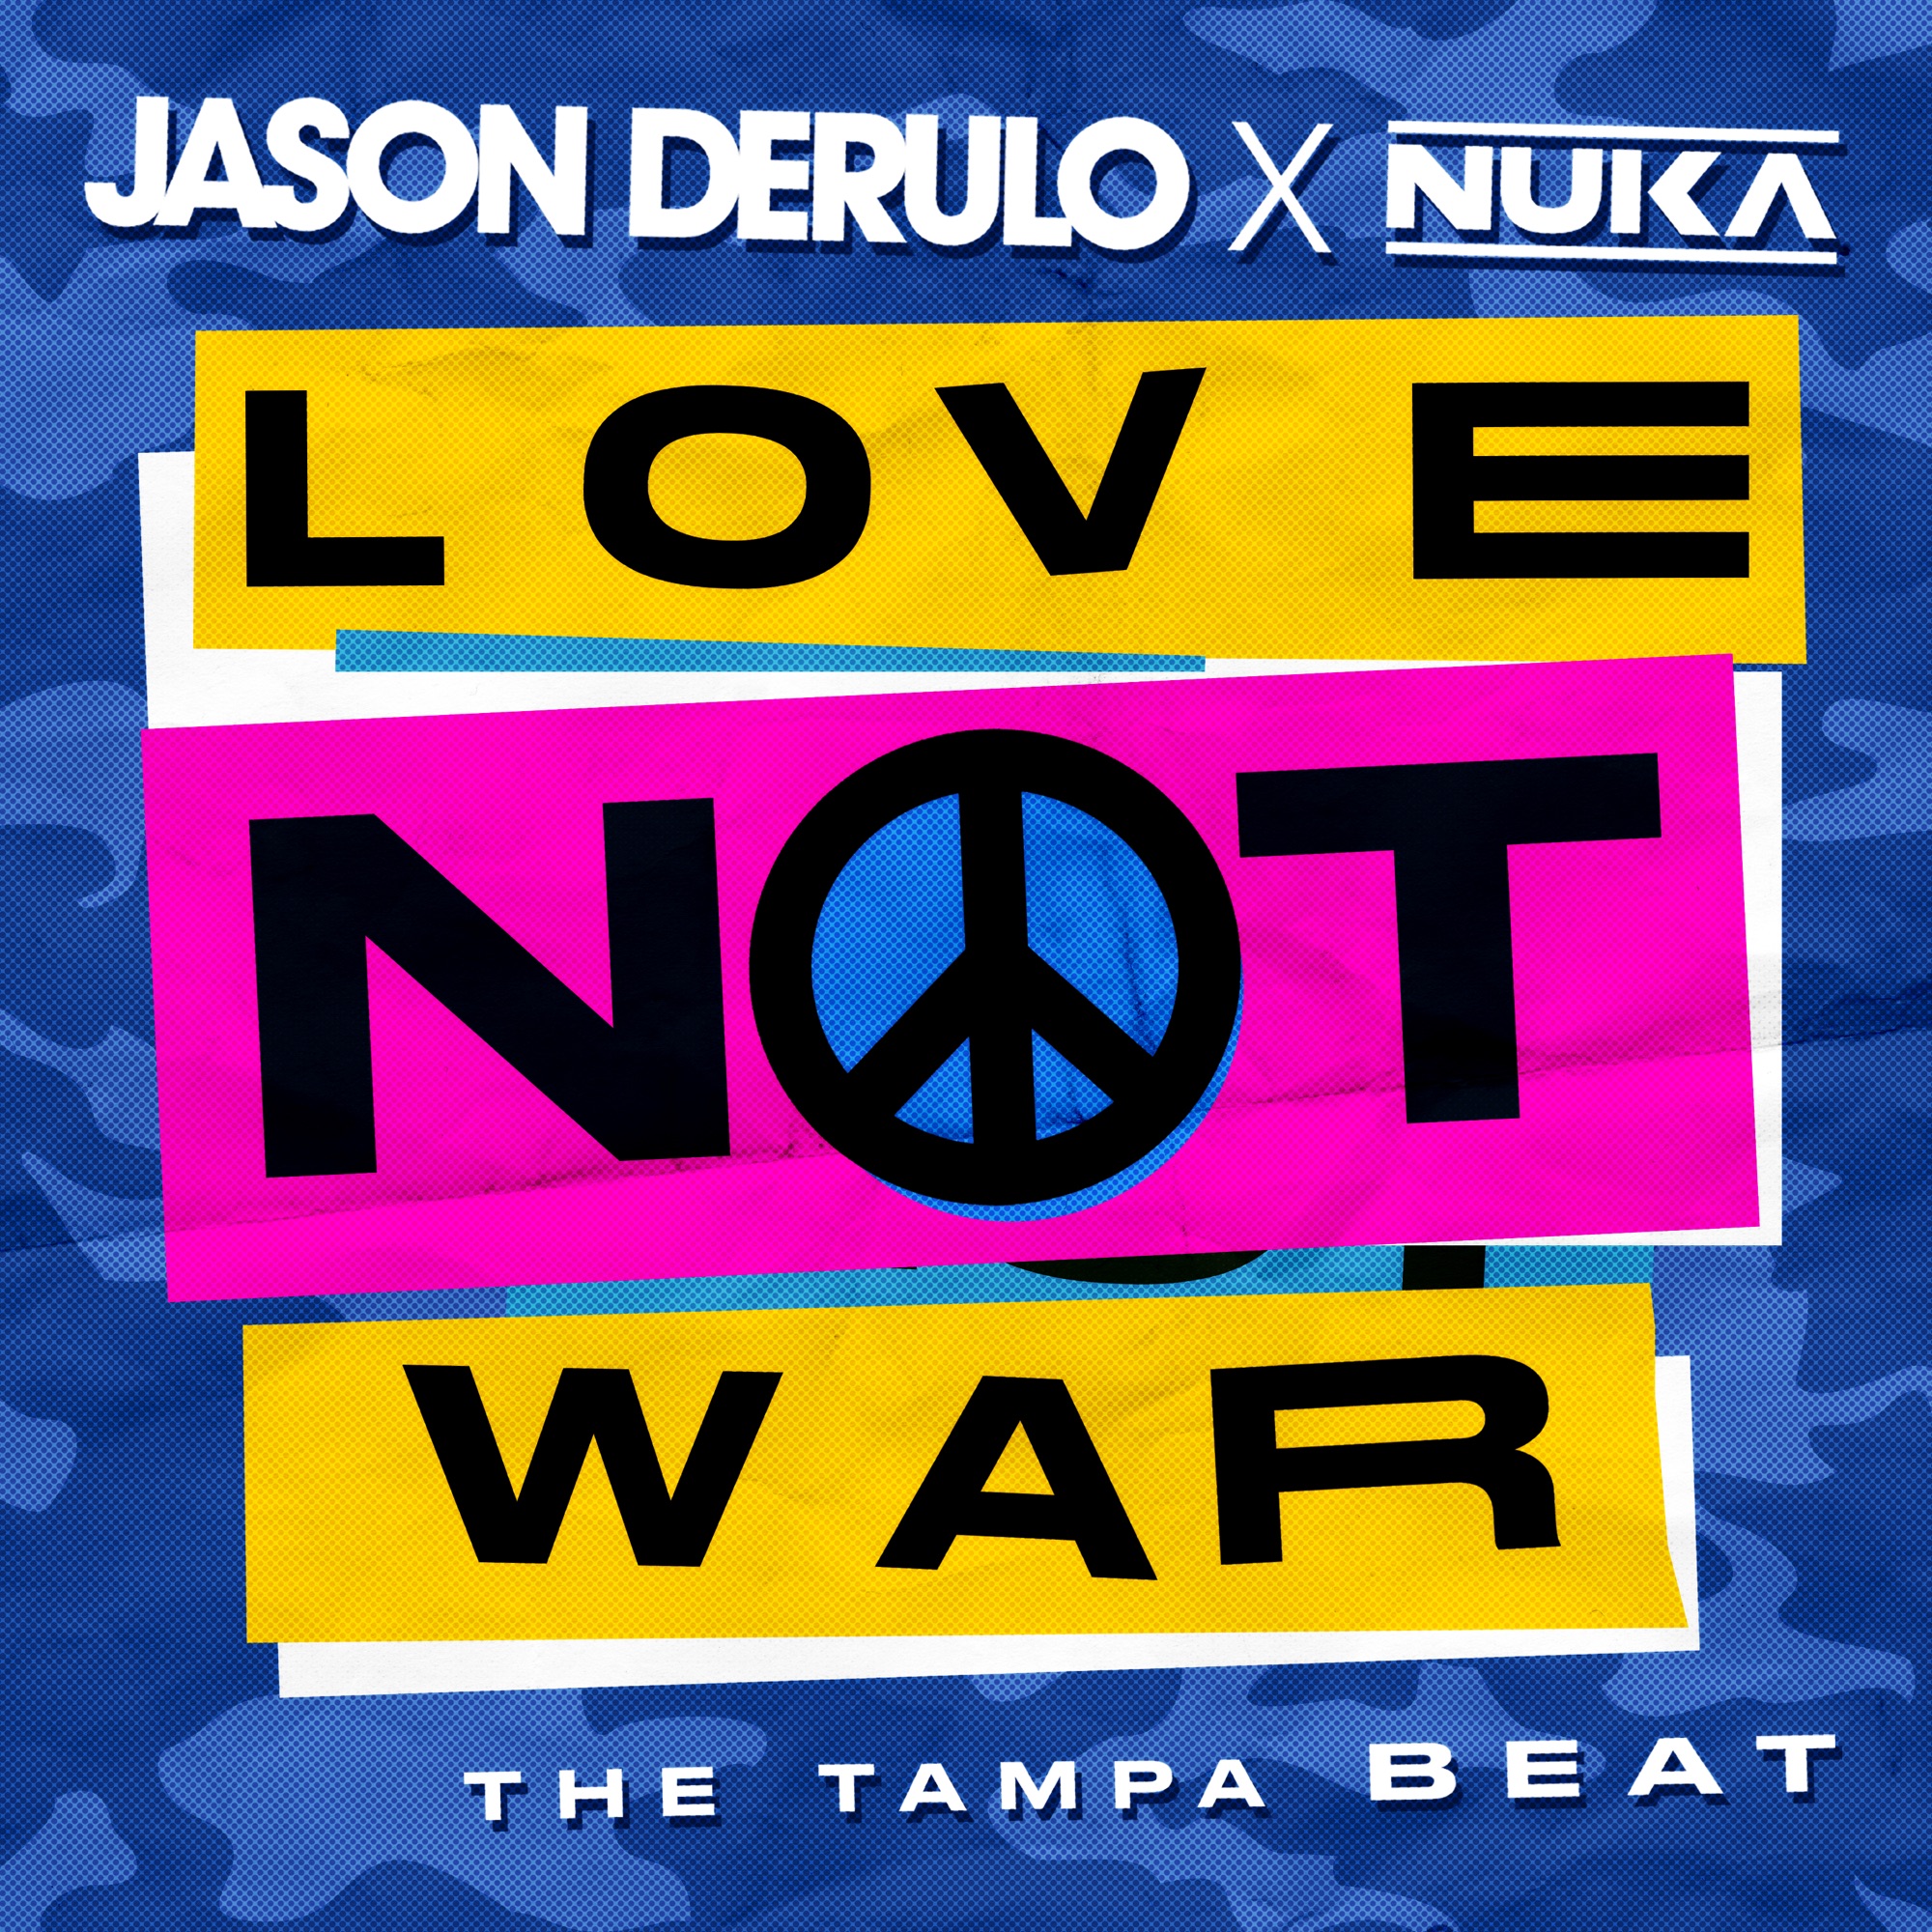 Jason Derulo & Nuka - Love Not War (The Tampa Beat) - Single